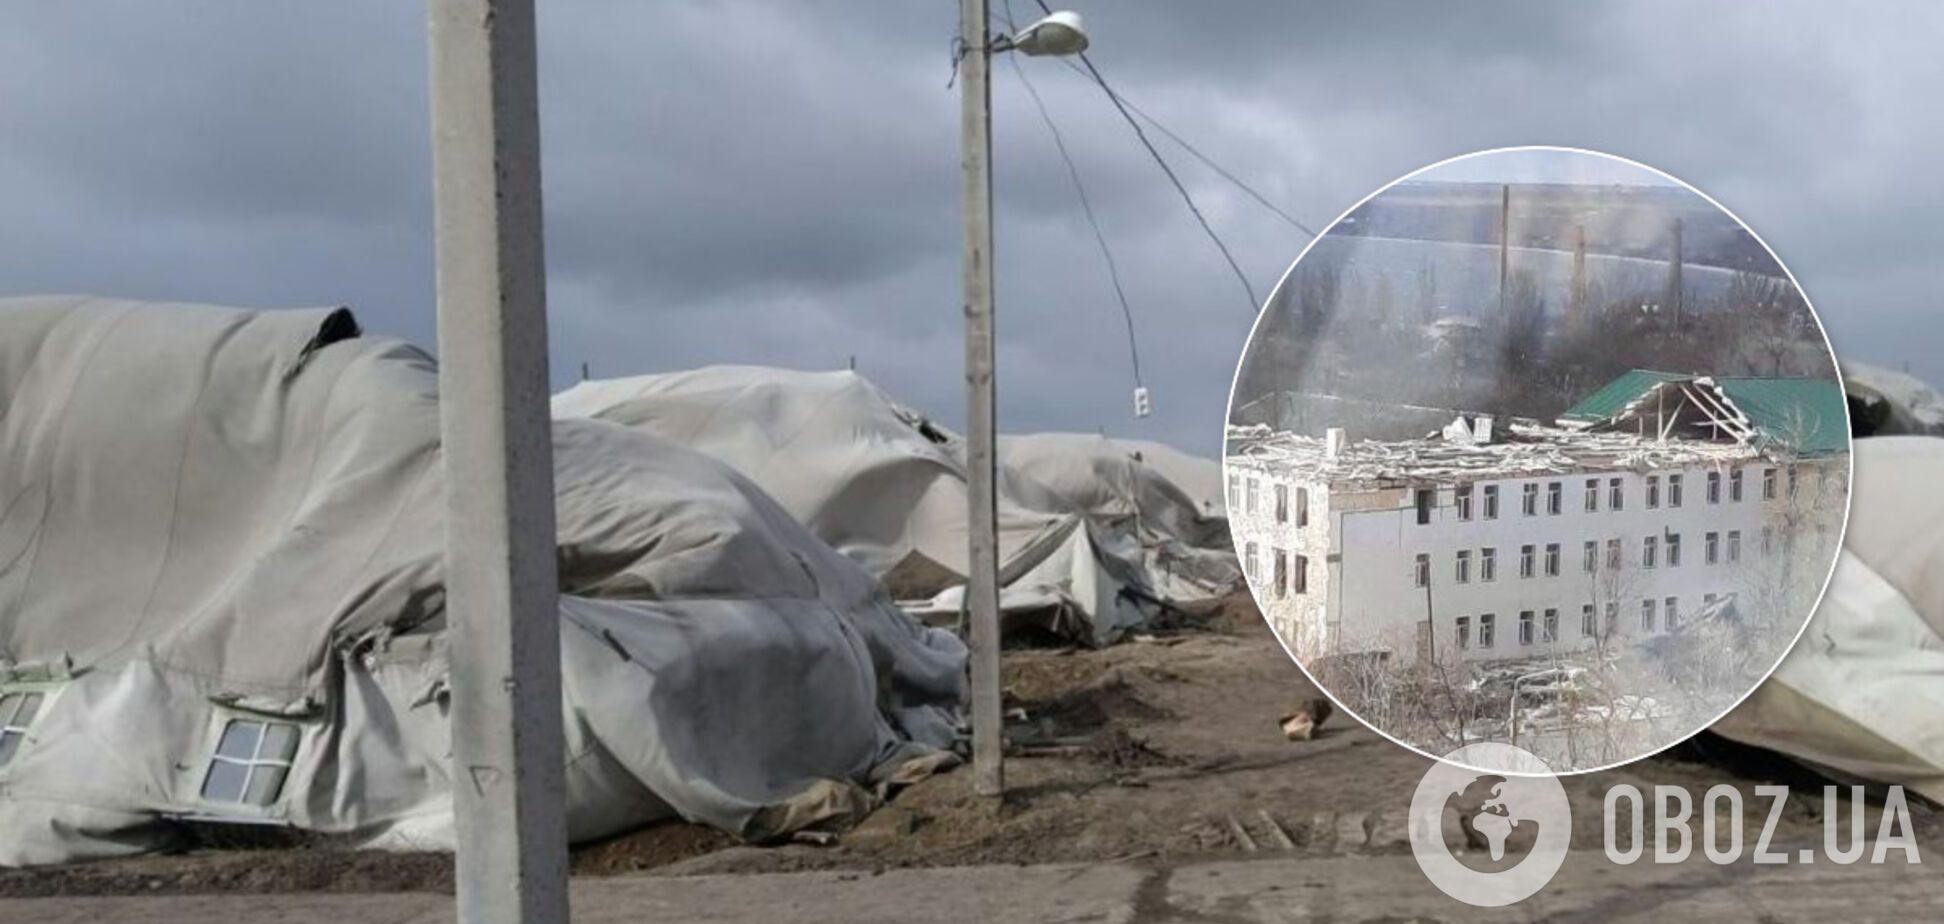 Ураган снес крышу отремонтированной казармы в Николаеве и палаточный городок ВСУ: фото и видео стихии